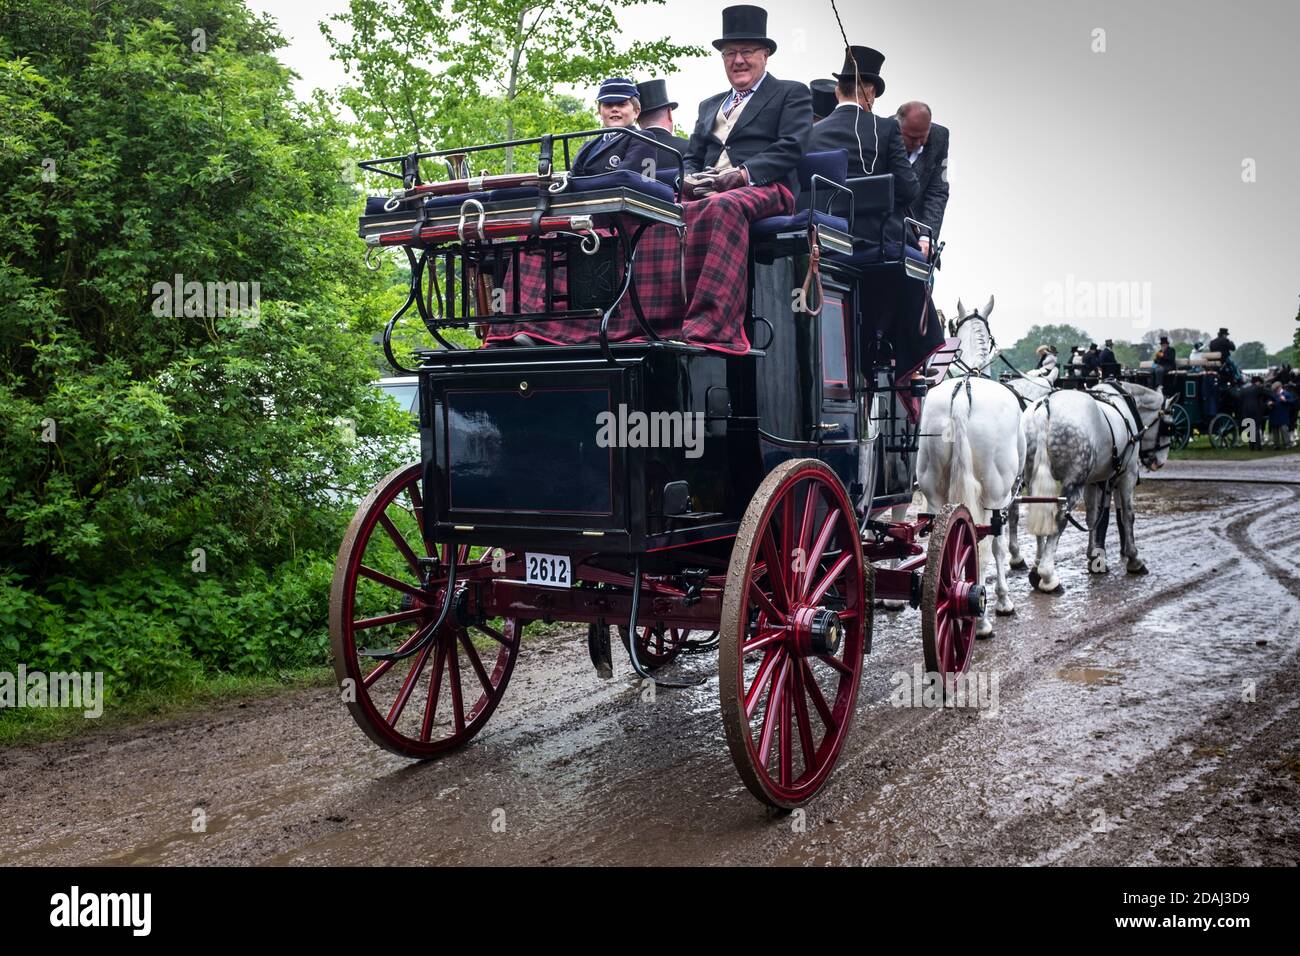 Ein alter 'Reisebus und vier' mit Fahrern und Passagieren, die während einer ziemlich nassen Royal Windsor Horse Show in England angemessen in historischen Kostümen gekleidet waren. Stockfoto